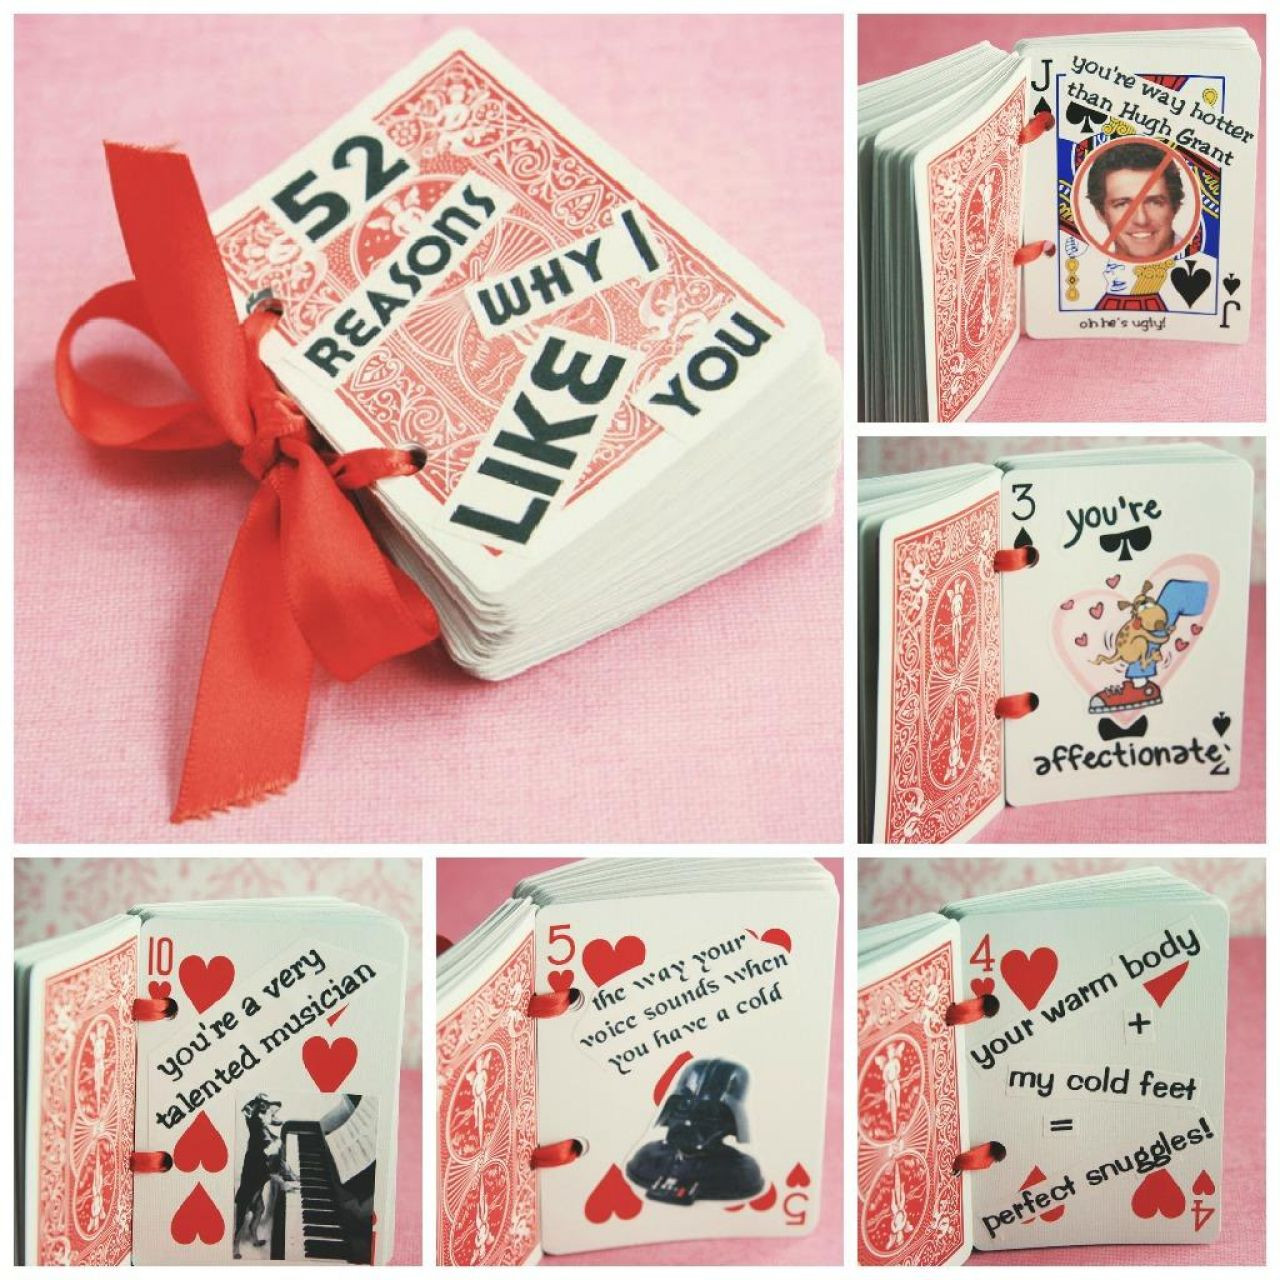 Ideas For Valentine Gift For Boyfriend
 24 LOVELY VALENTINE S DAY GIFTS FOR YOUR BOYFRIEND